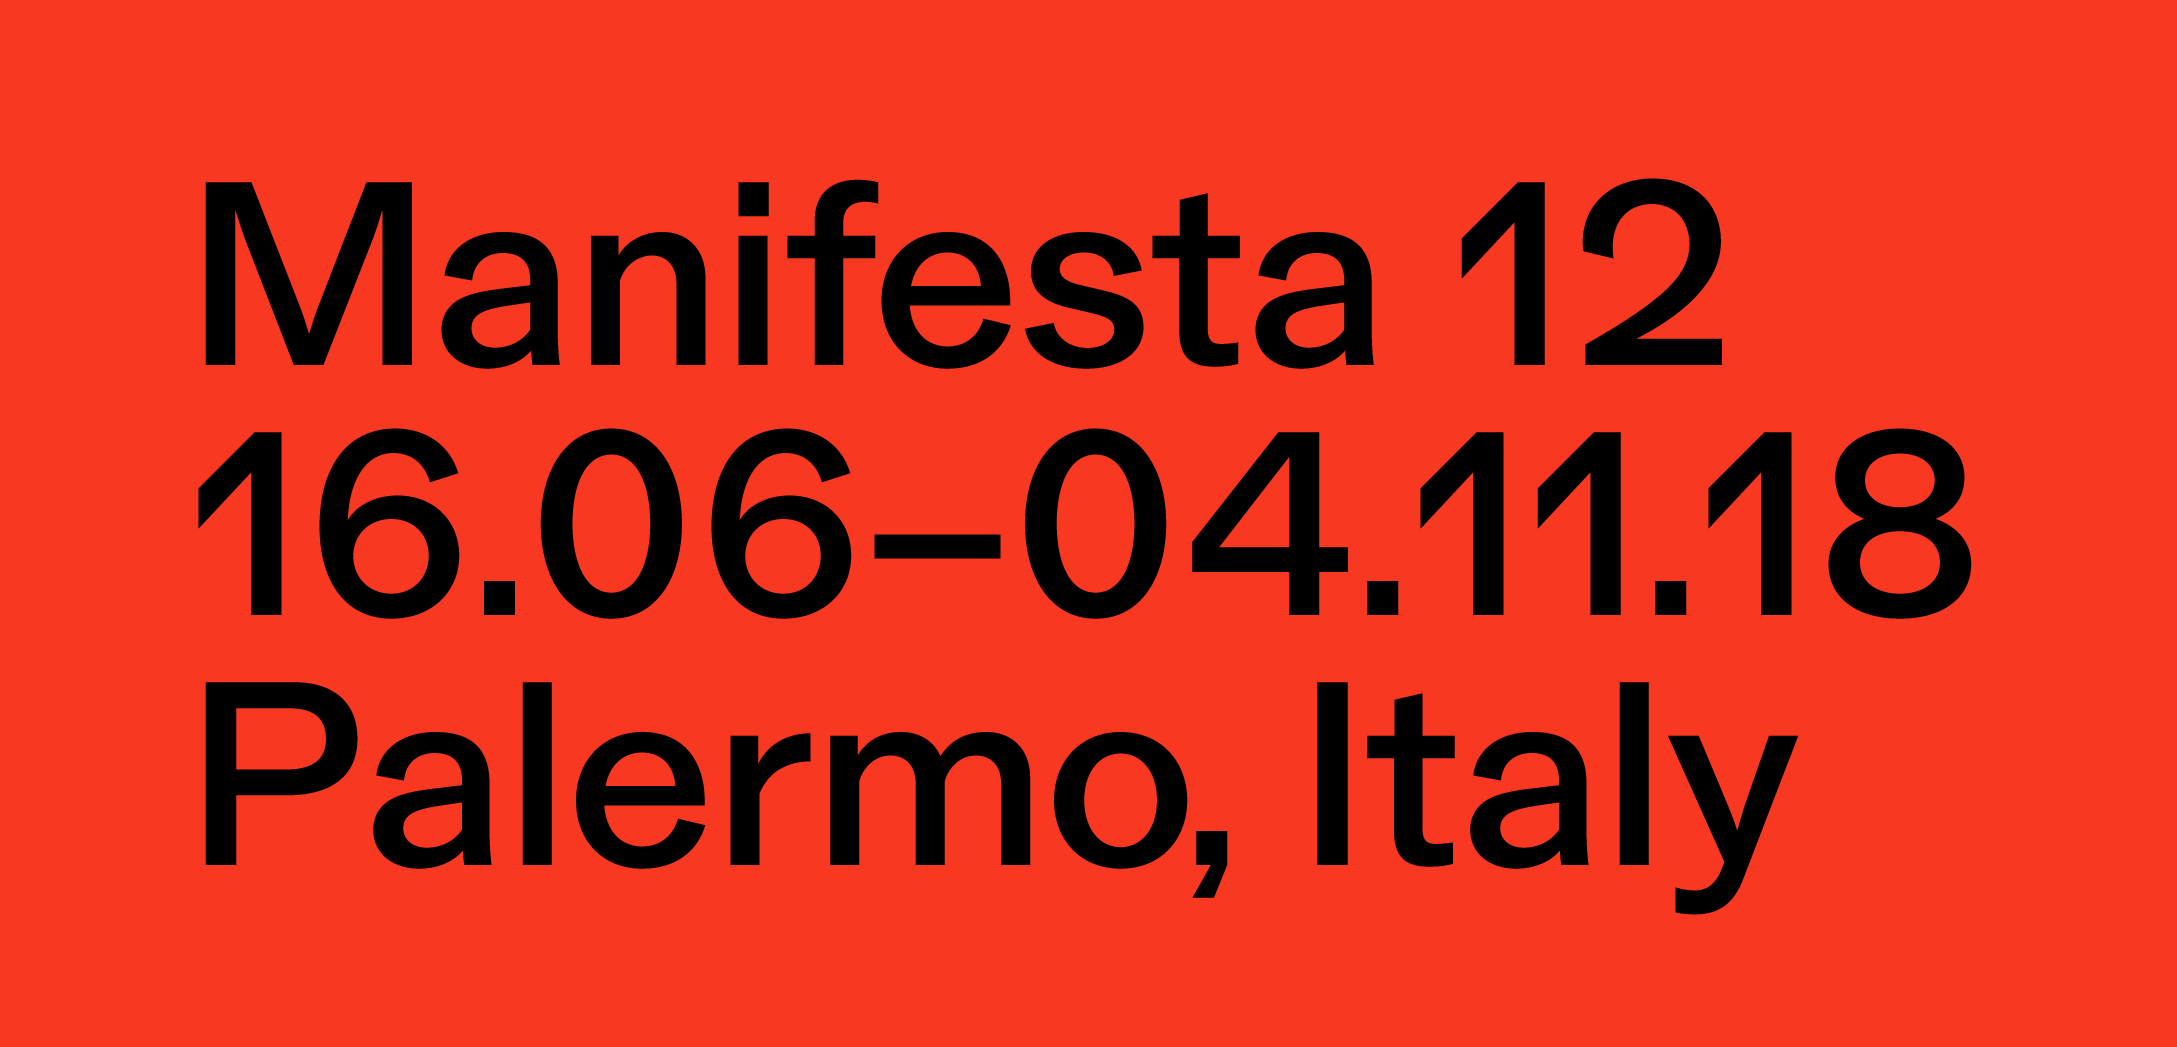 Manifesta 12 Palermo